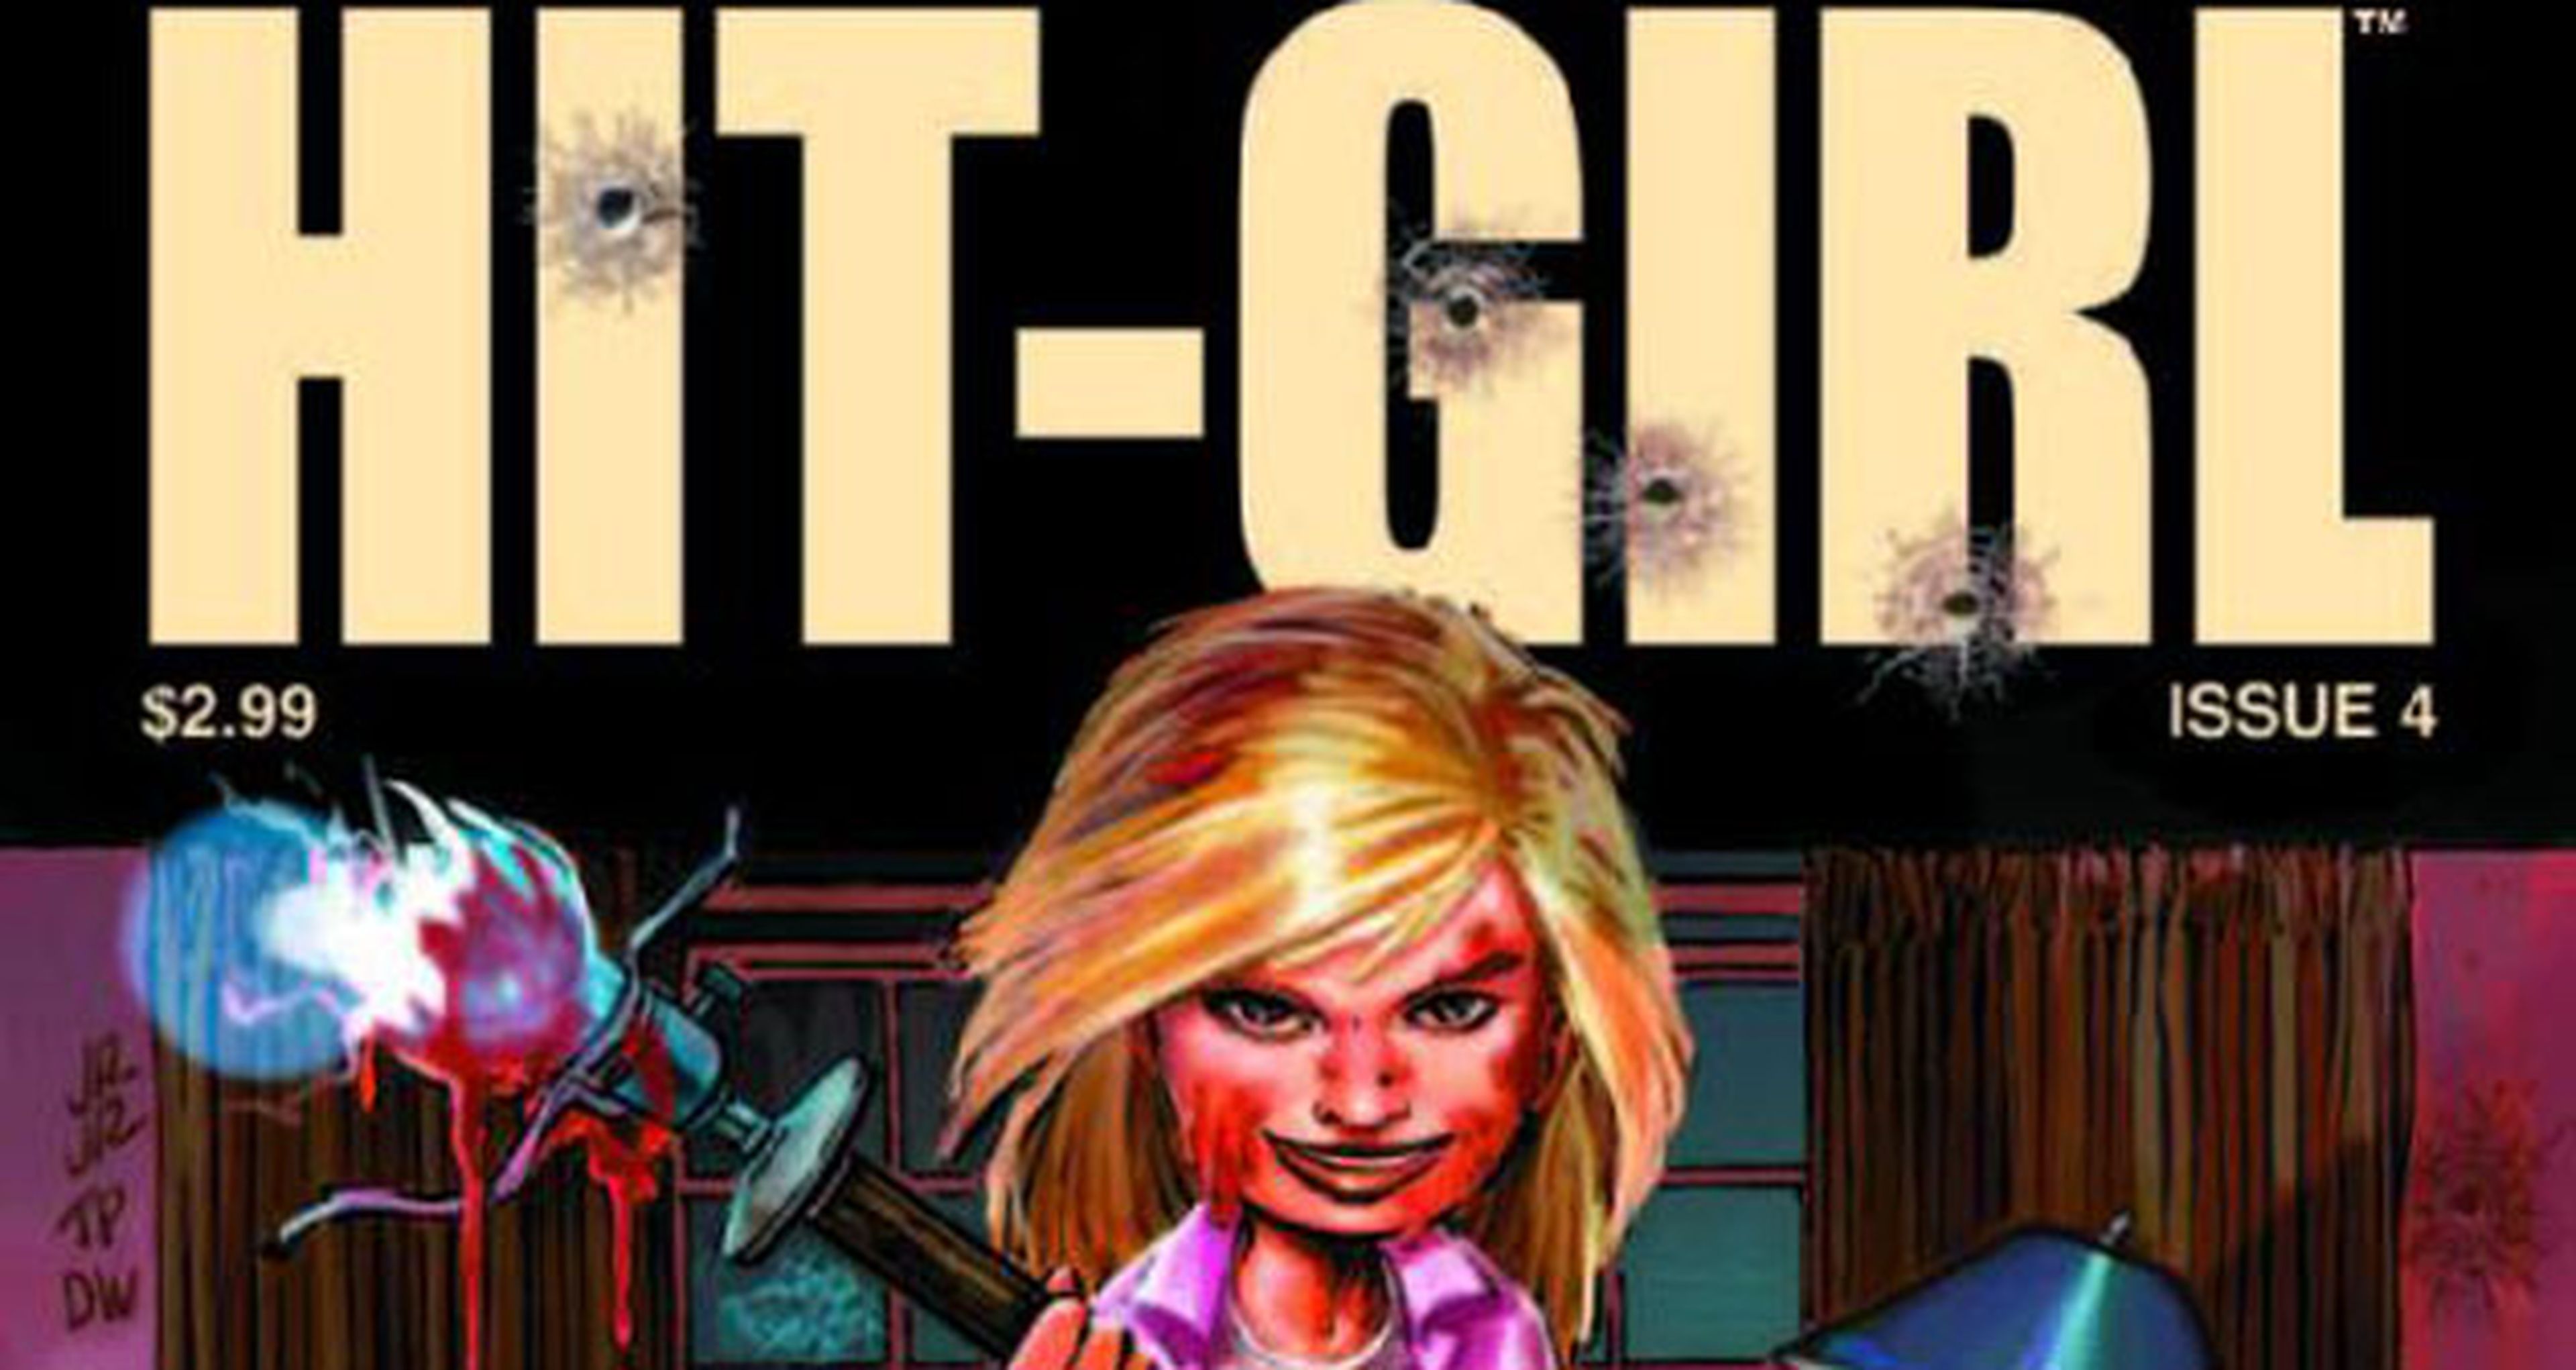 EEUU: Hit-Girl número 4, a la venta